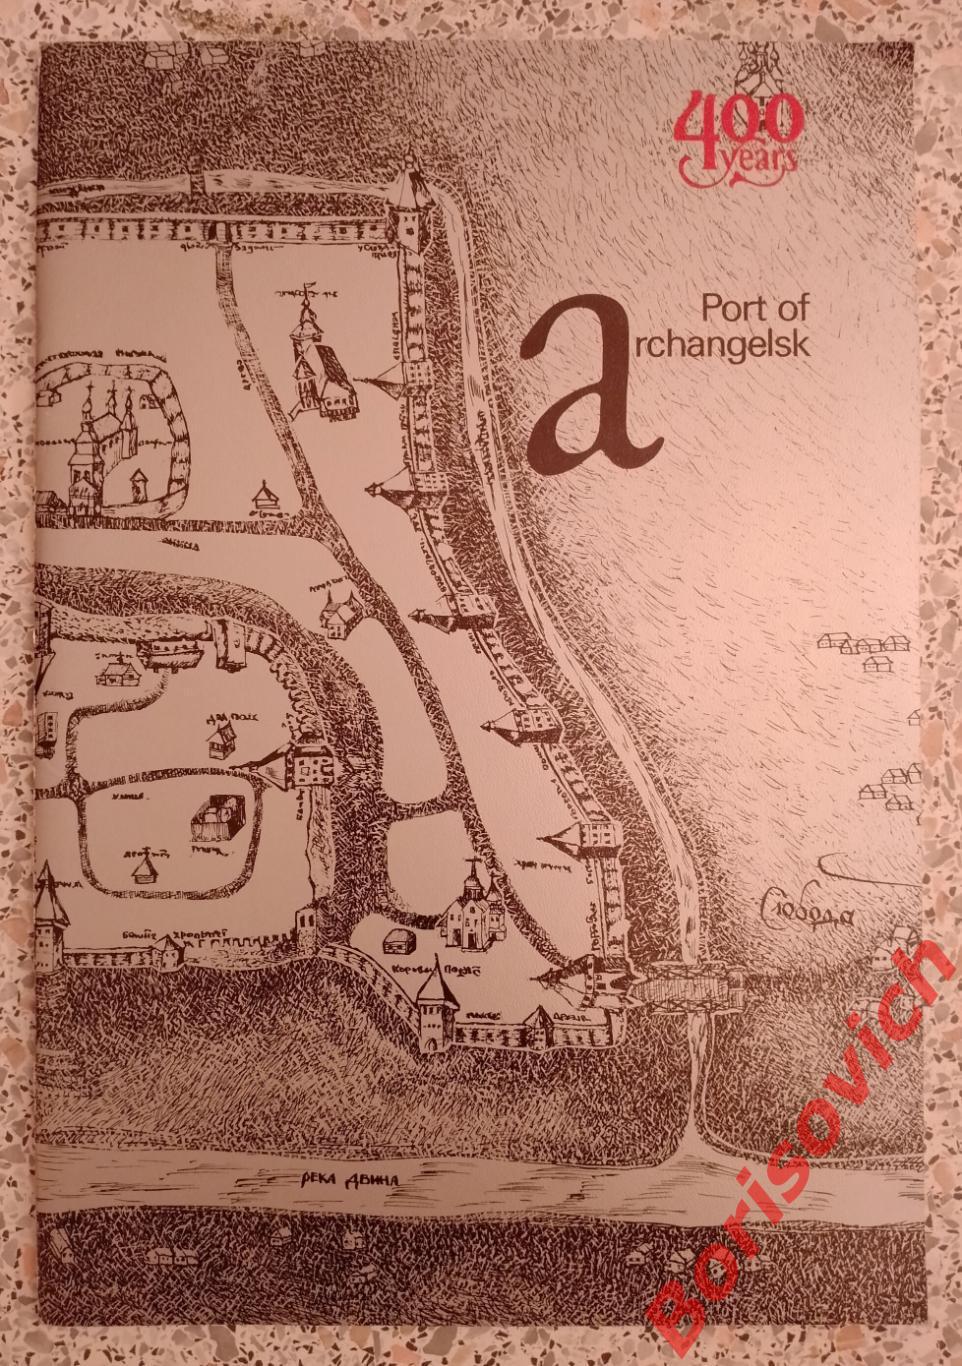 Port of ARKHANGELSK 400 years